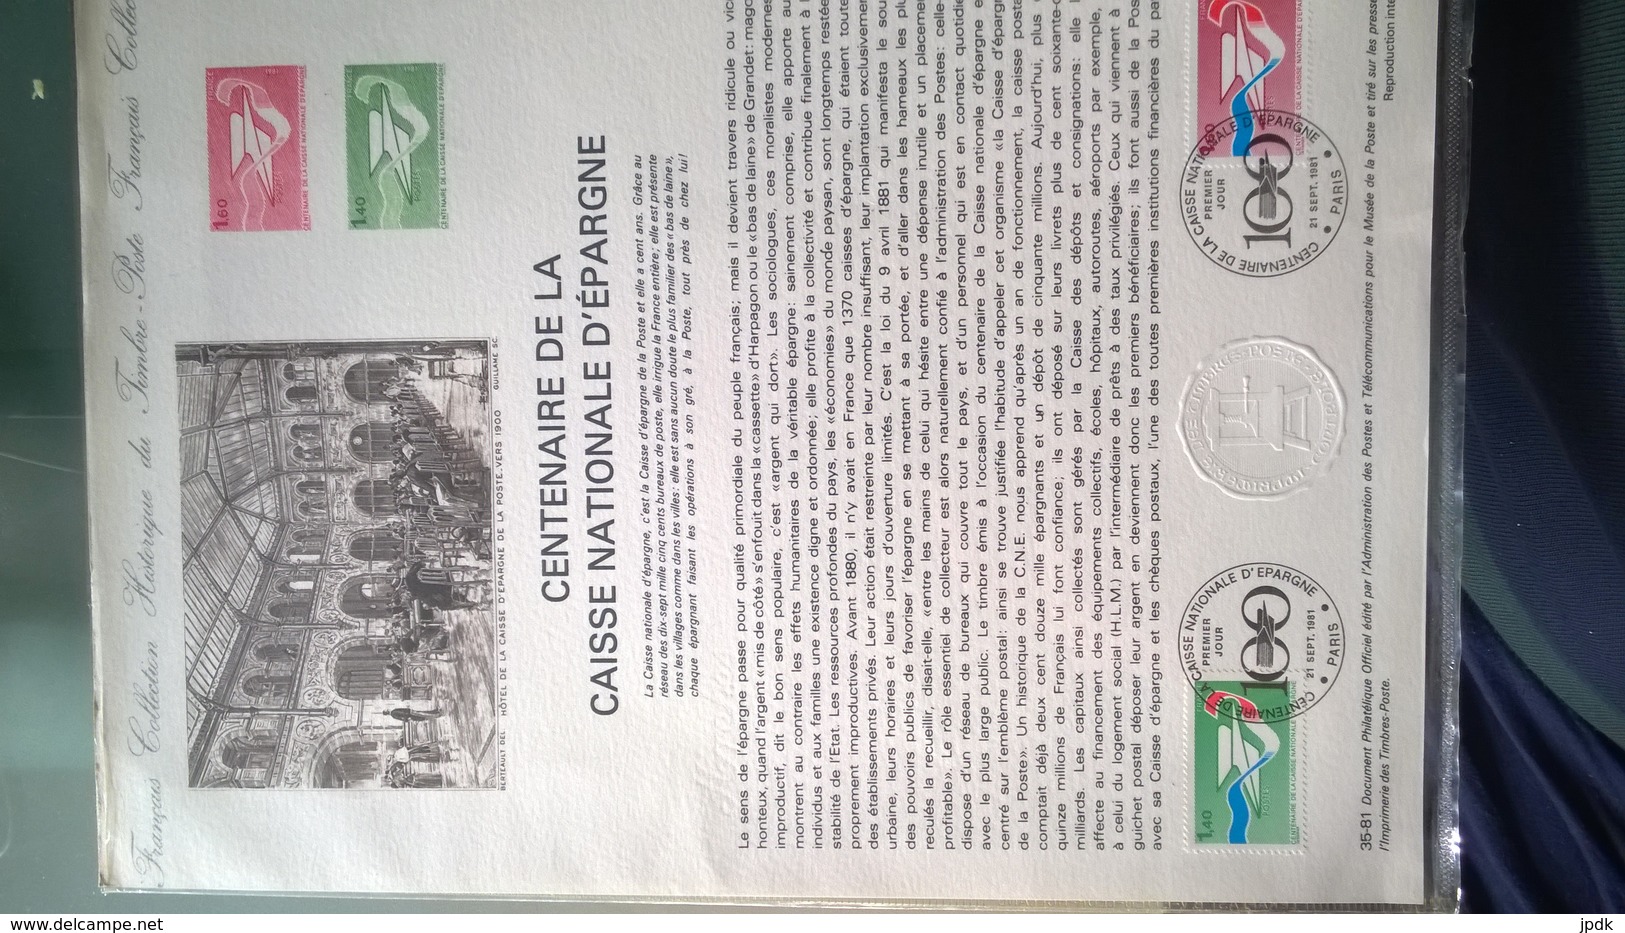 Centenaire De La Caisse Nationale D'épargne (1981). Document Philatélique Officiel De L'administration De La Poste - Zonder Classificatie